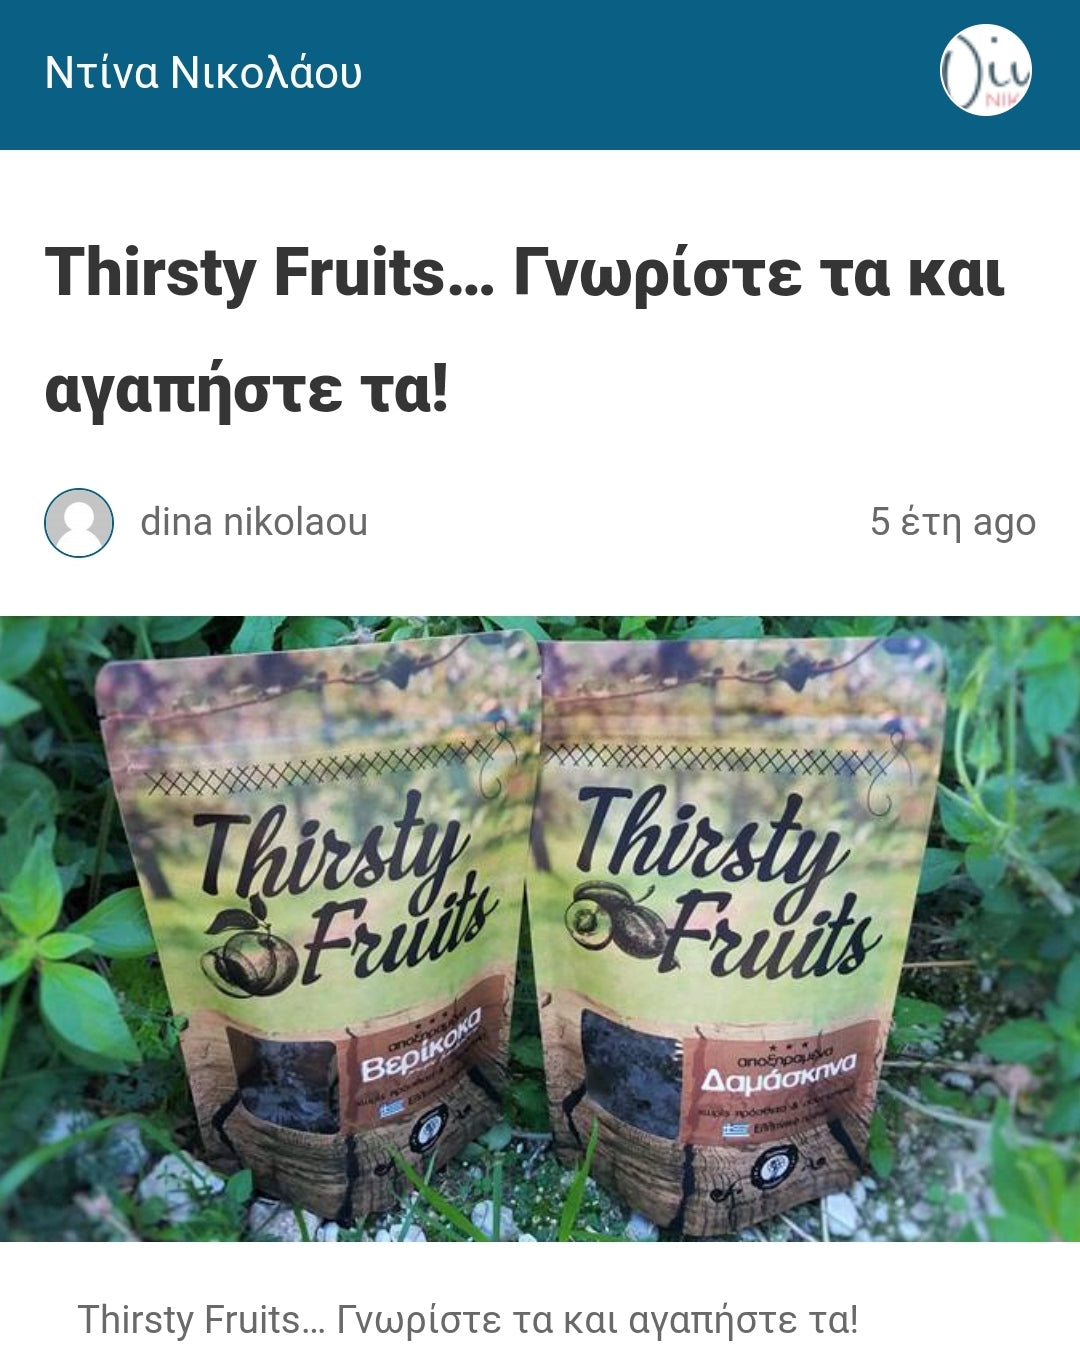 Thirsty Fruits... Γνωρίστε τα & αγαπήστε τα!